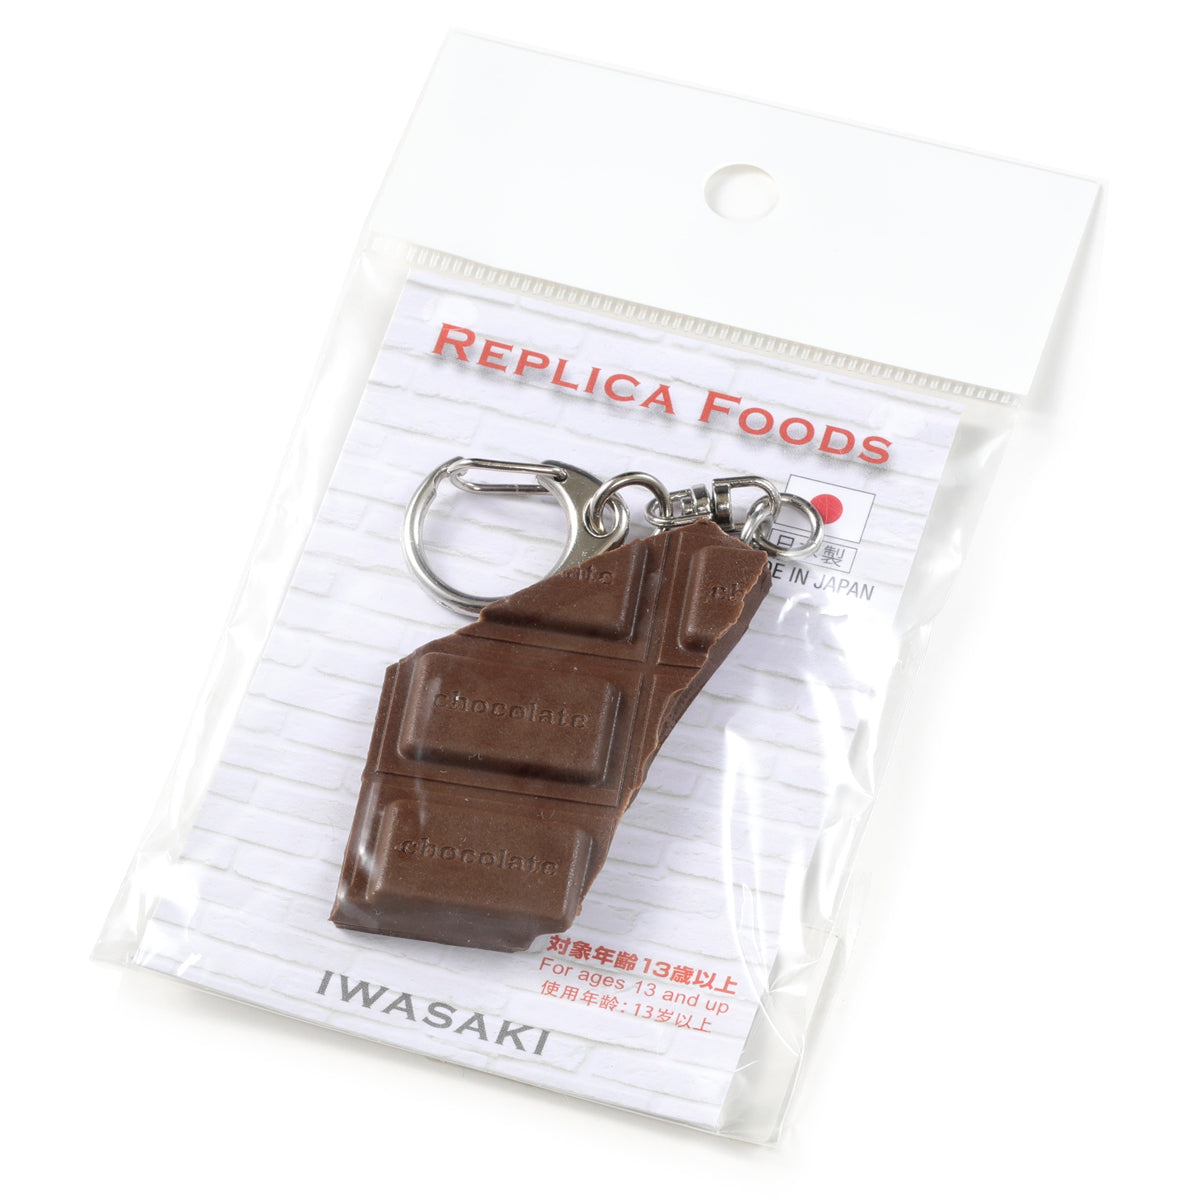 食品サンプル(IWASAKI)「板チョコのキーリング 」の商品パッケージ画像です。